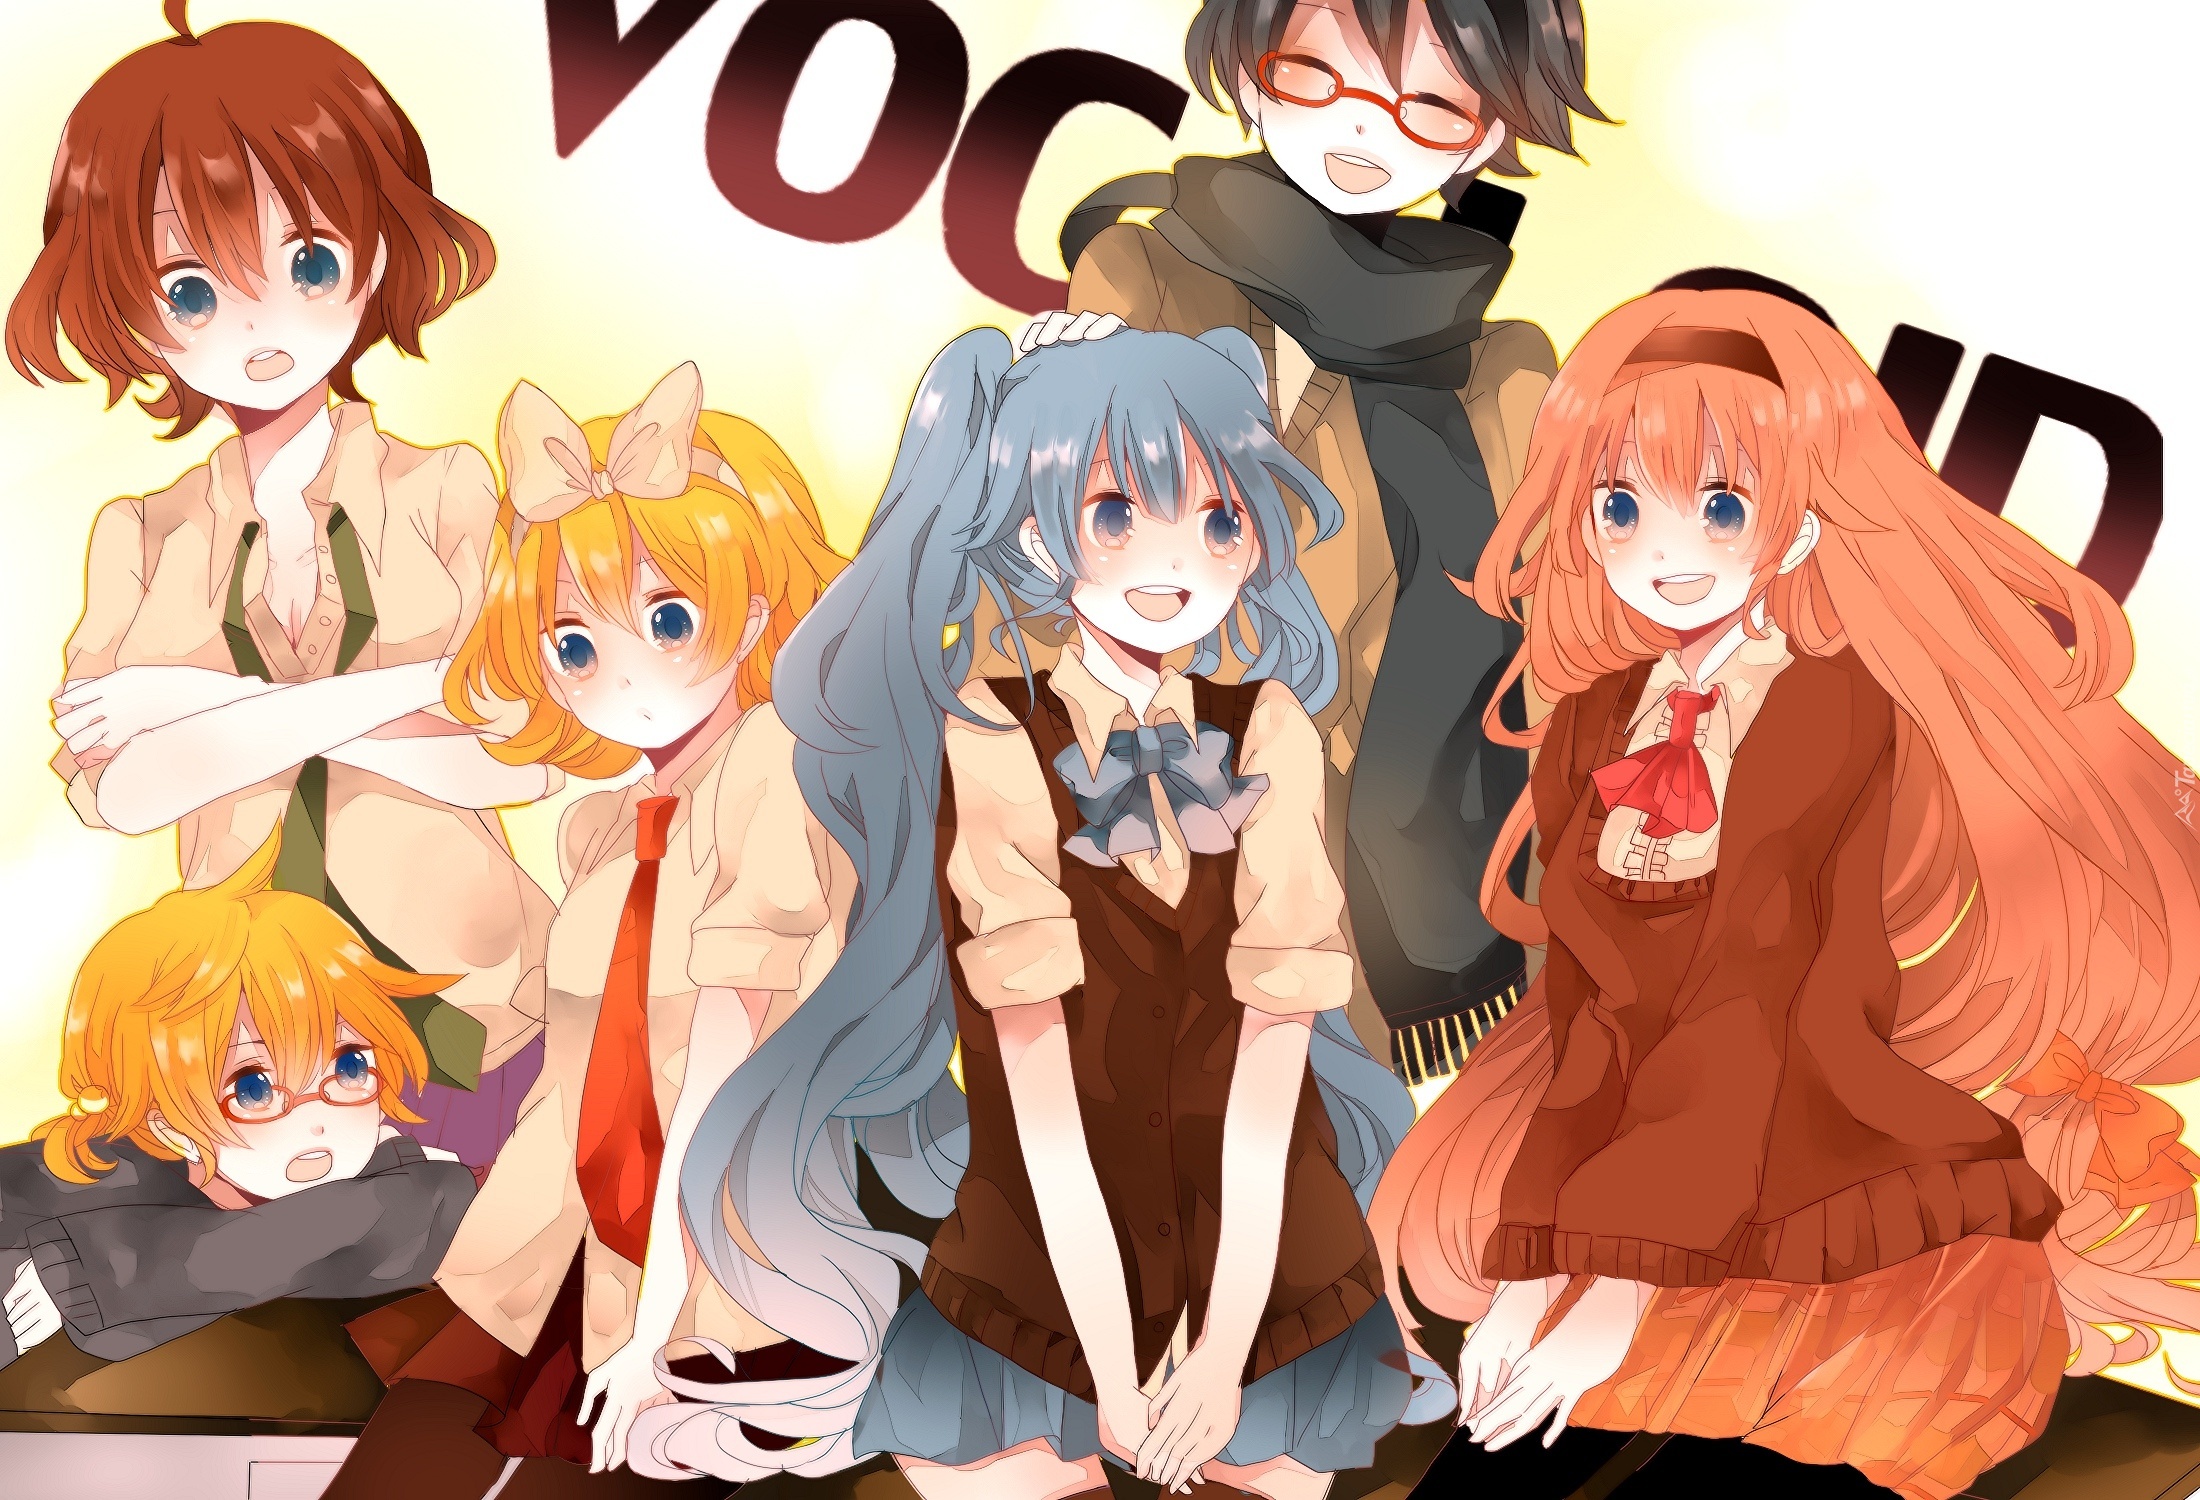 Vocaloid, Hatsune Miku, Kagamine Rin, Kagamine Len, Megurine Luka, Meiko, Kaito